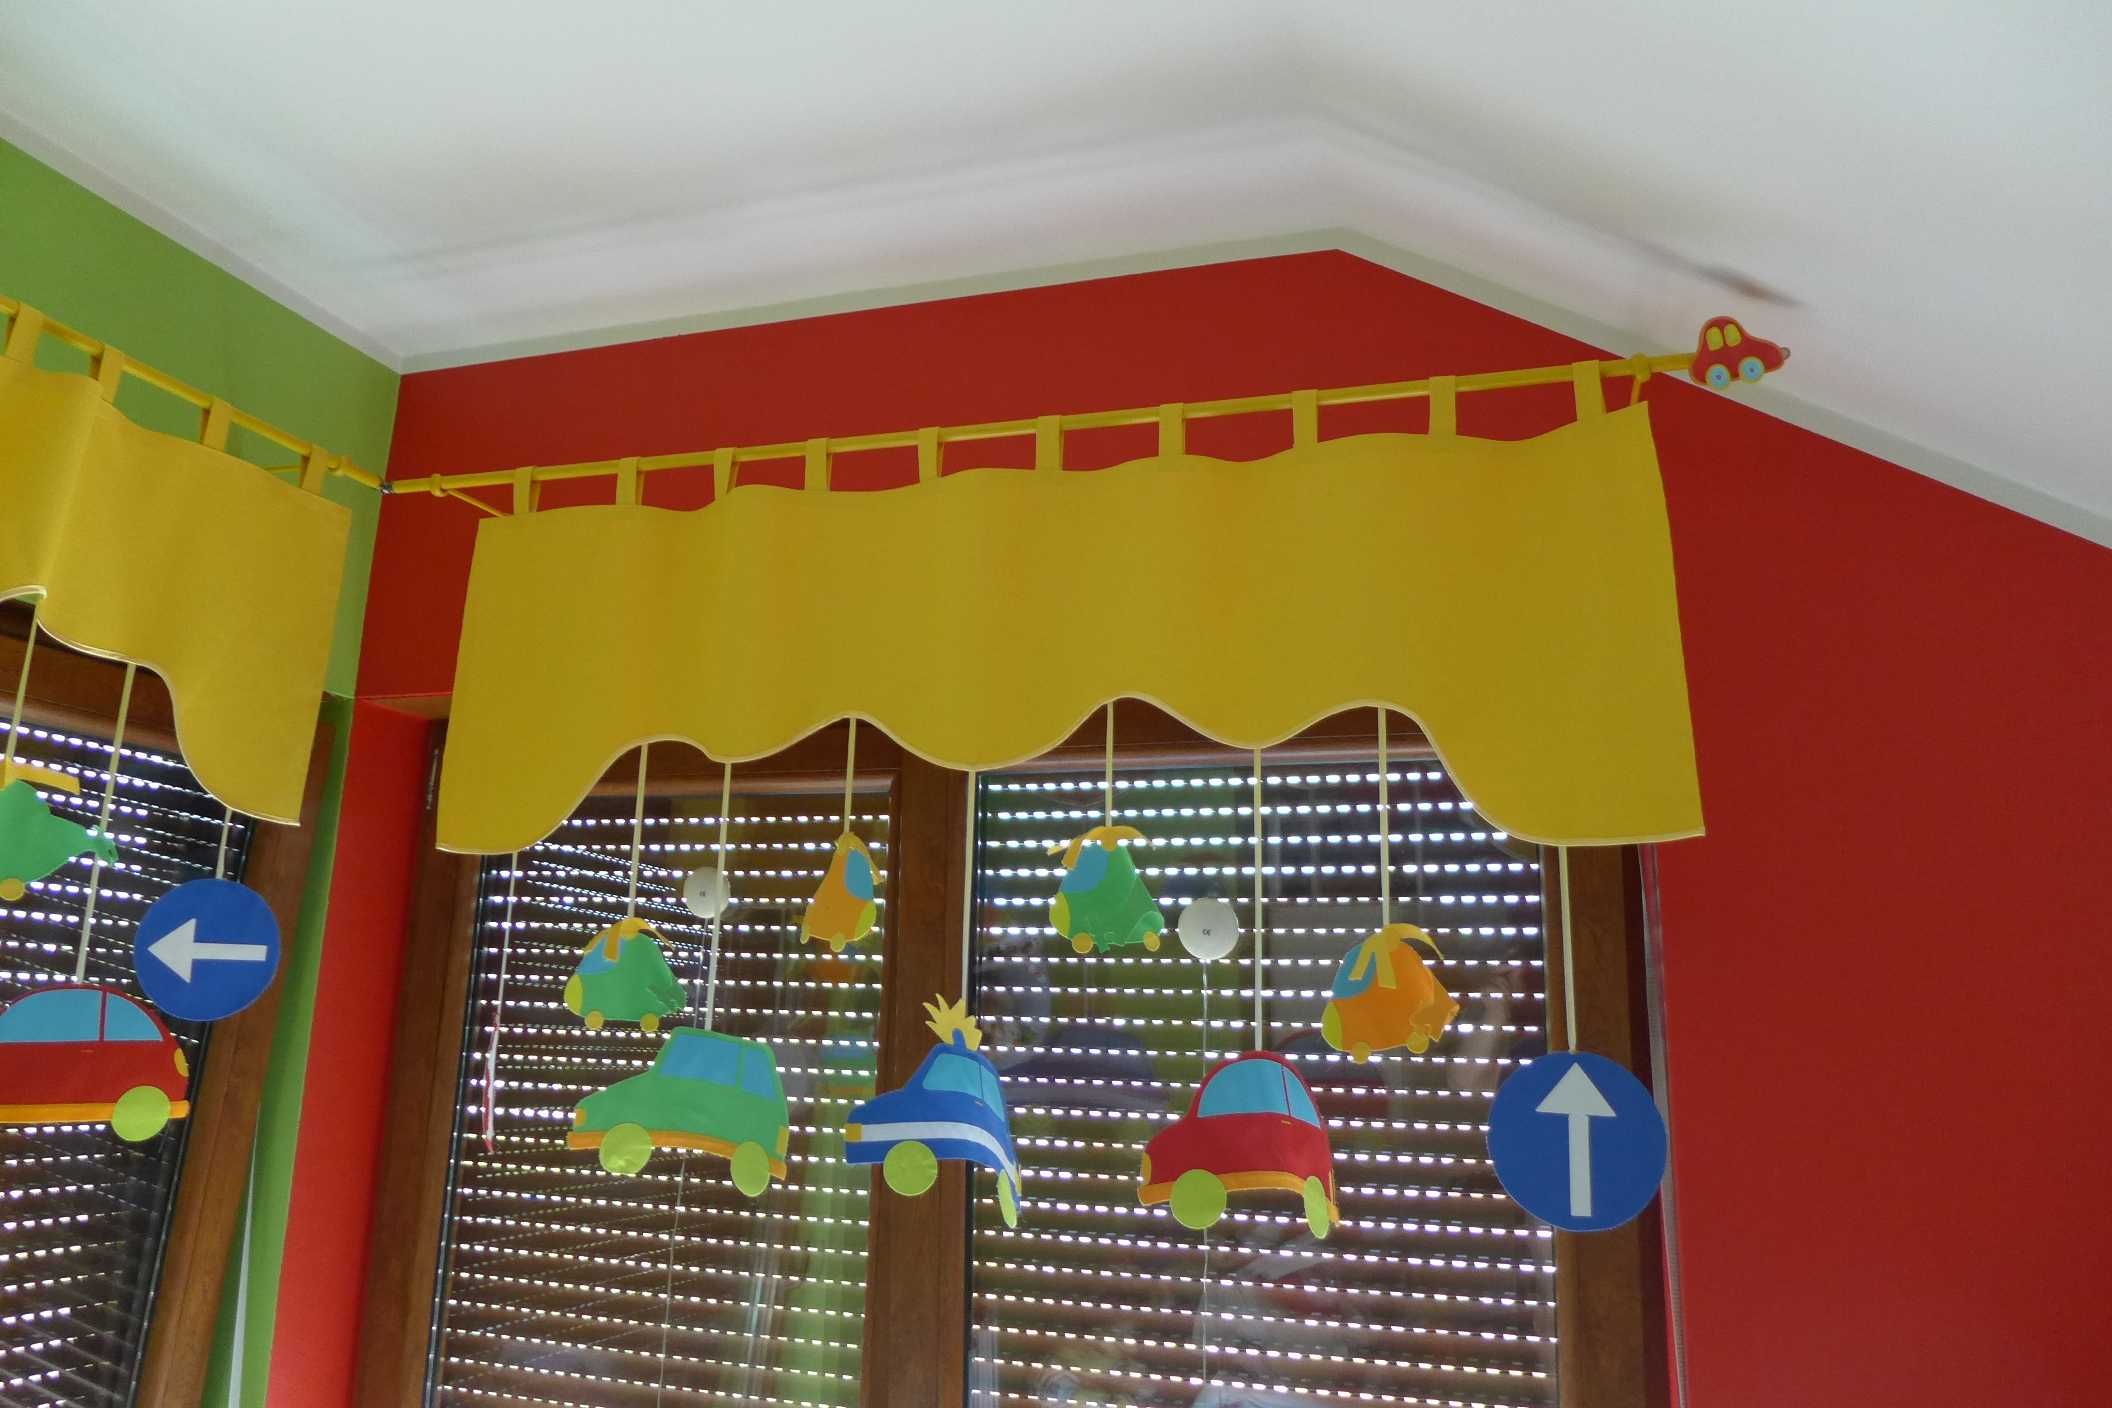 KARNISZE dziecięce wraz z dekoracją okienną